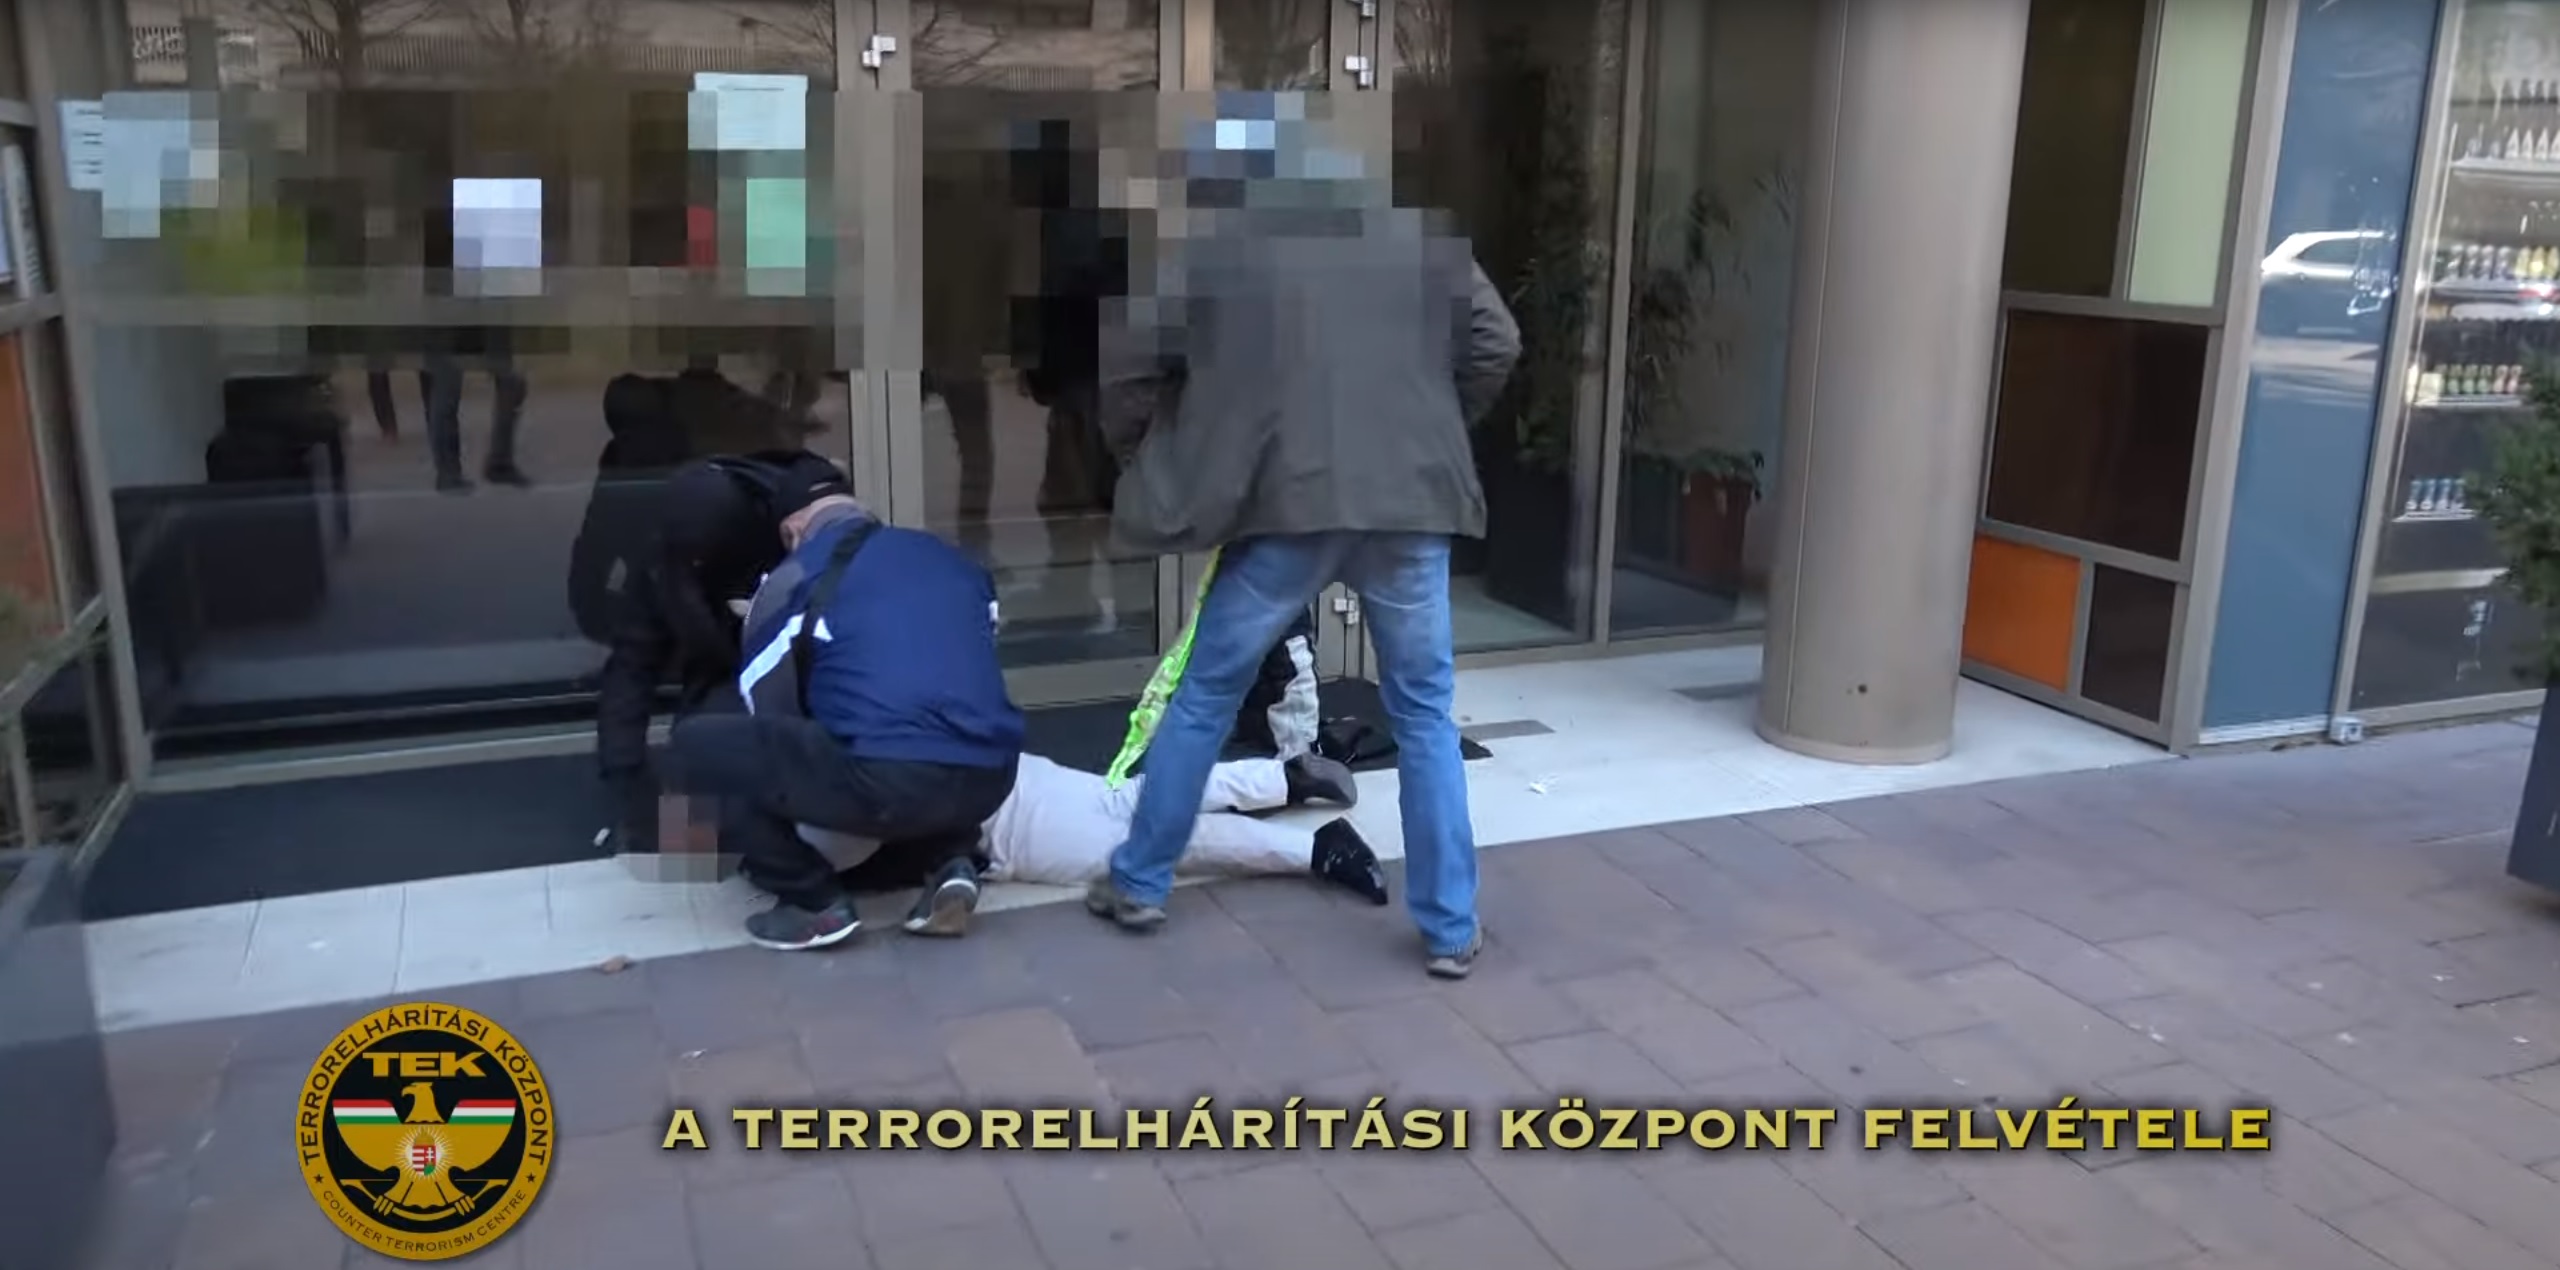 Polacco arrestato a Budapest per sequestro di persona, presa di ostaggi, rapina a mano armata